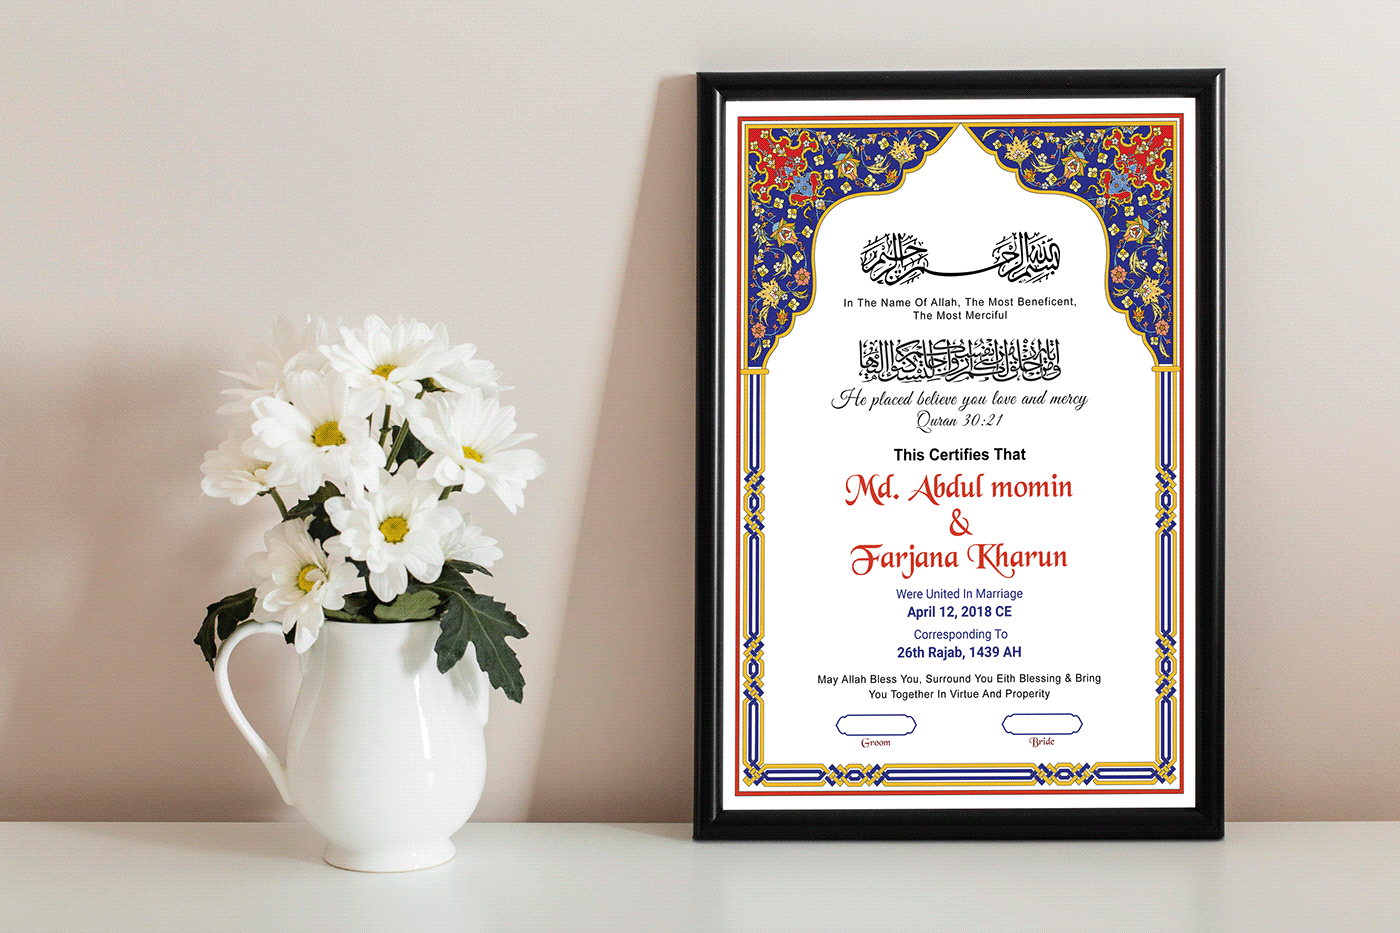 nikah nama nikah certificate marriage wedding muslim certificate islamic marriage Muslim Nikah Nama muslim weeding nikah contract